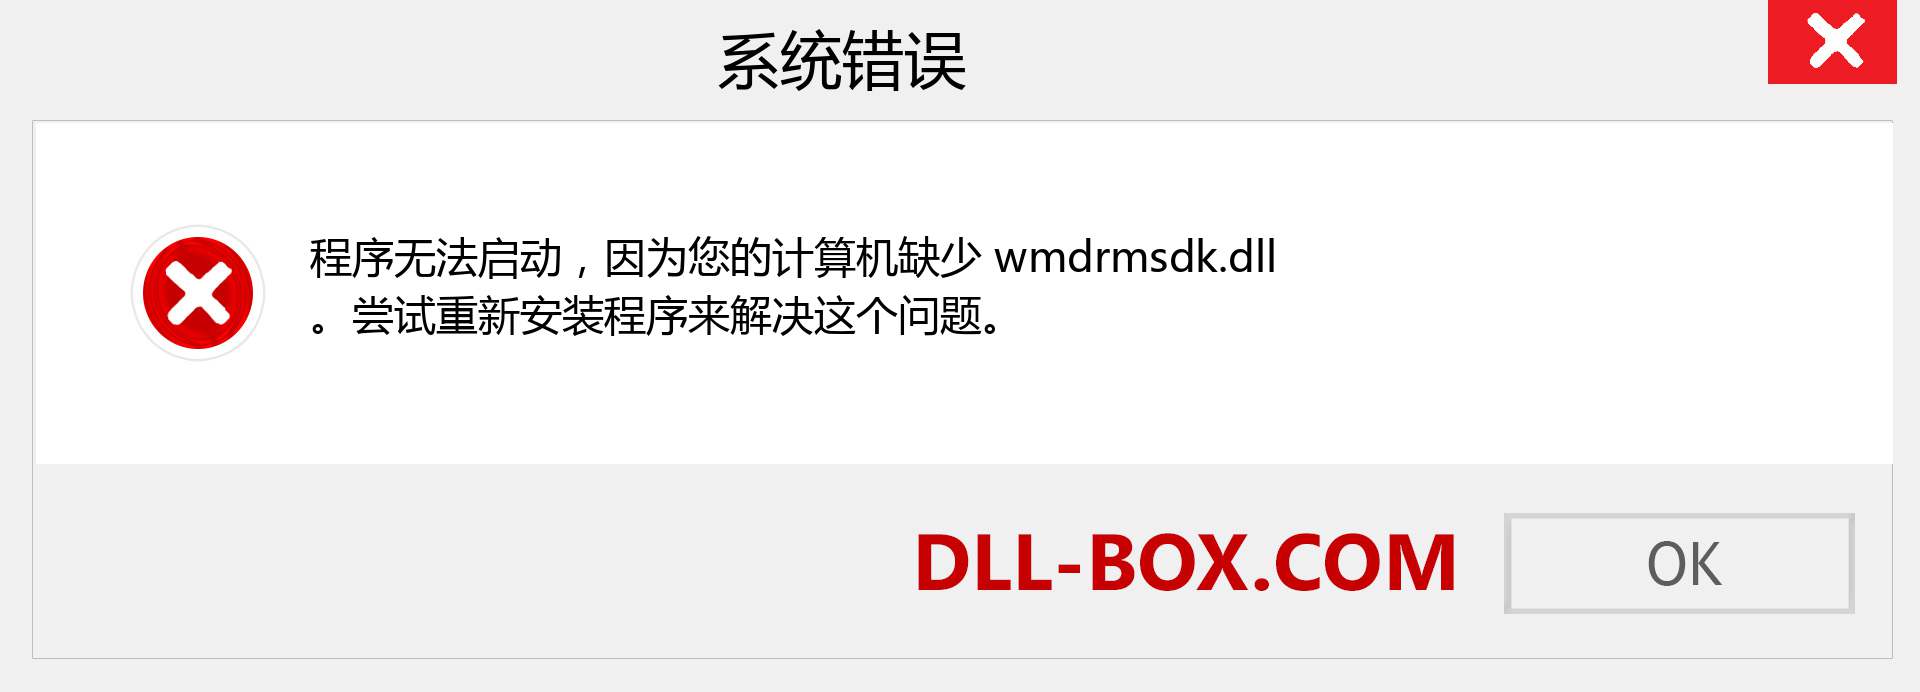 wmdrmsdk.dll 文件丢失？。 适用于 Windows 7、8、10 的下载 - 修复 Windows、照片、图像上的 wmdrmsdk dll 丢失错误